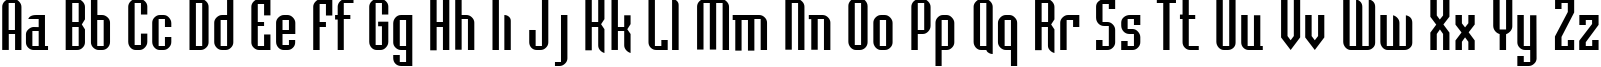 Пример написания английского алфавита шрифтом BedrockC